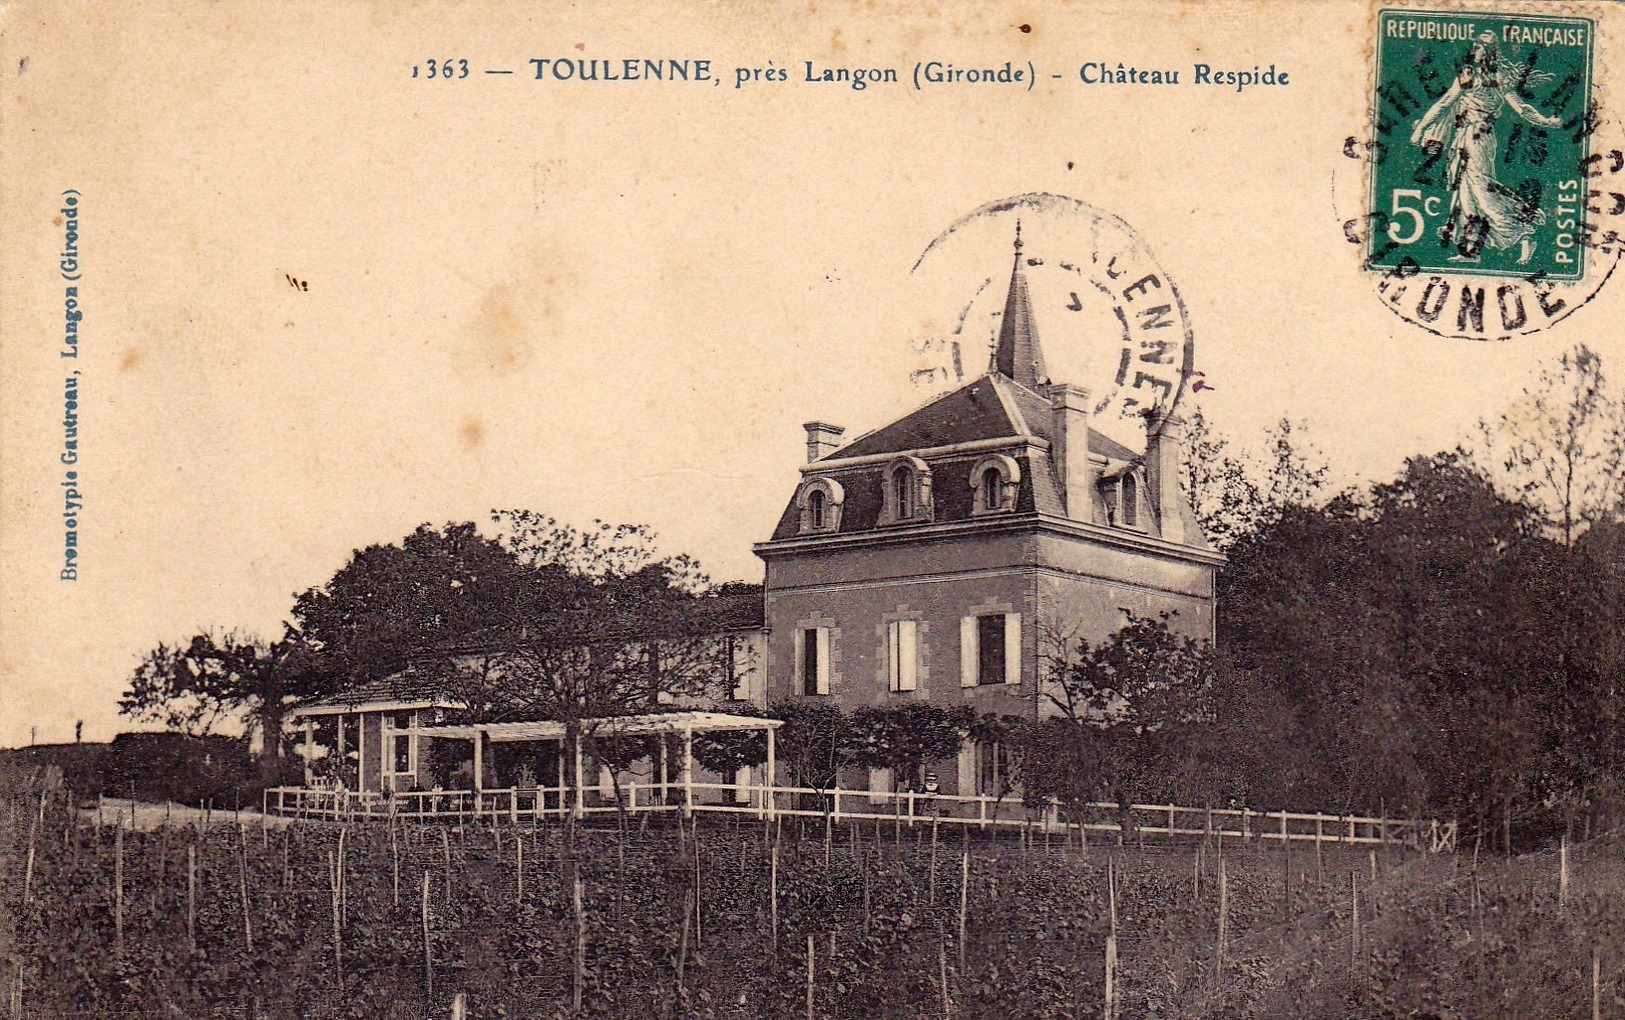 Vue du Château Respide, Toulenne, près de Langon (Gironde)